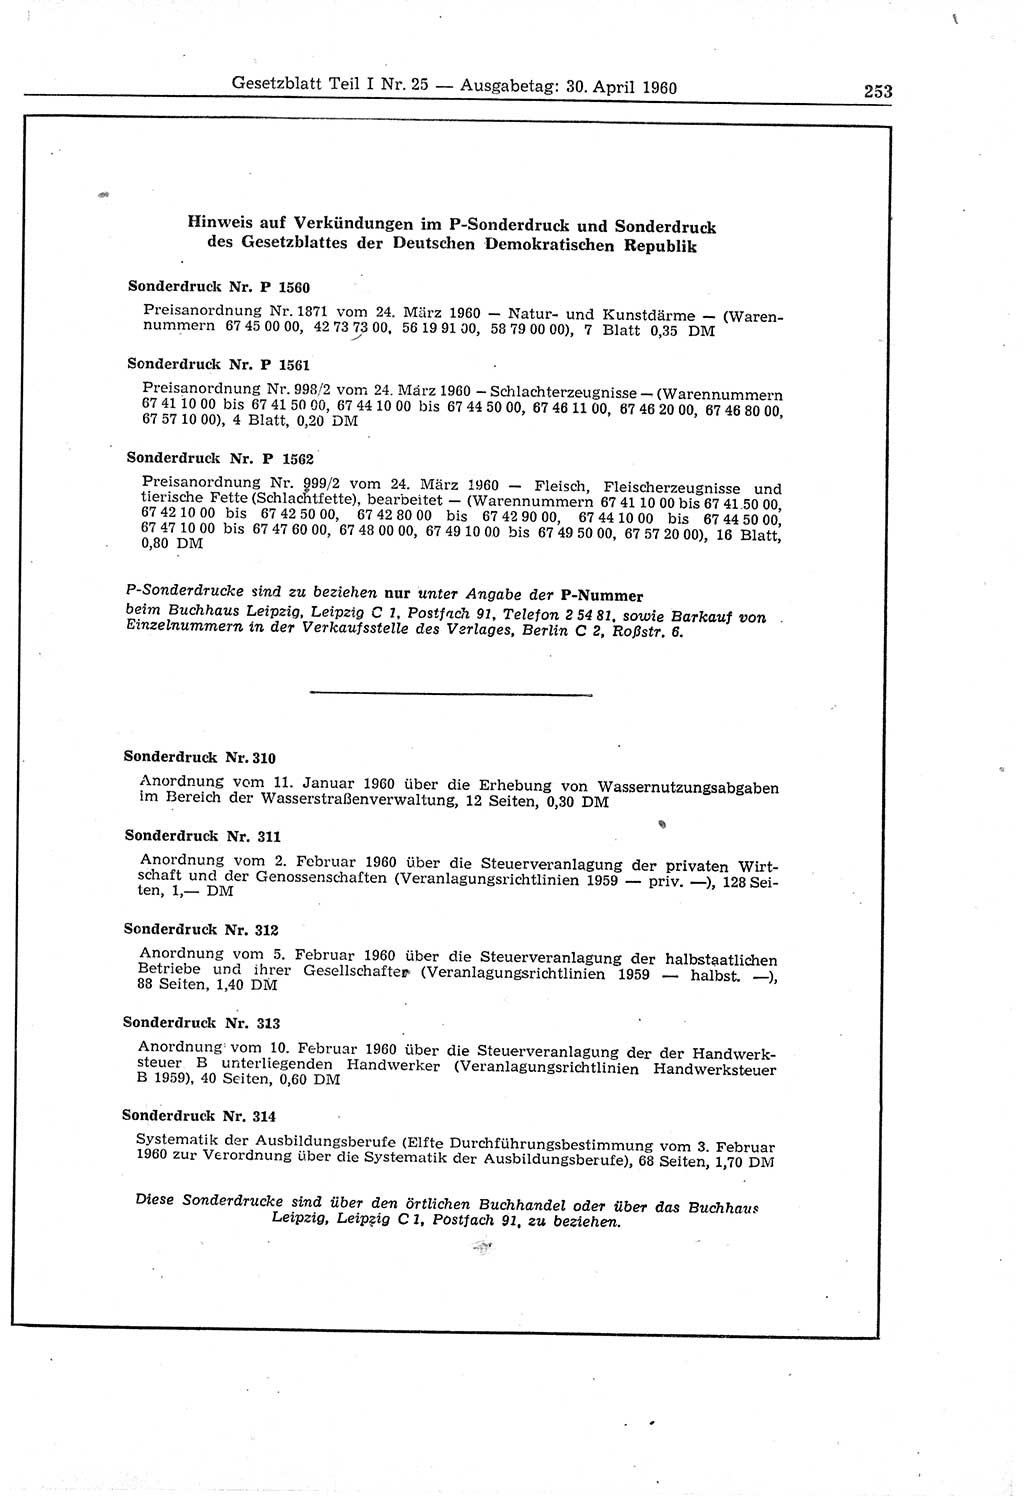 Gesetzblatt (GBl.) der Deutschen Demokratischen Republik (DDR) Teil Ⅰ 1960, Seite 253 (GBl. DDR Ⅰ 1960, S. 253)